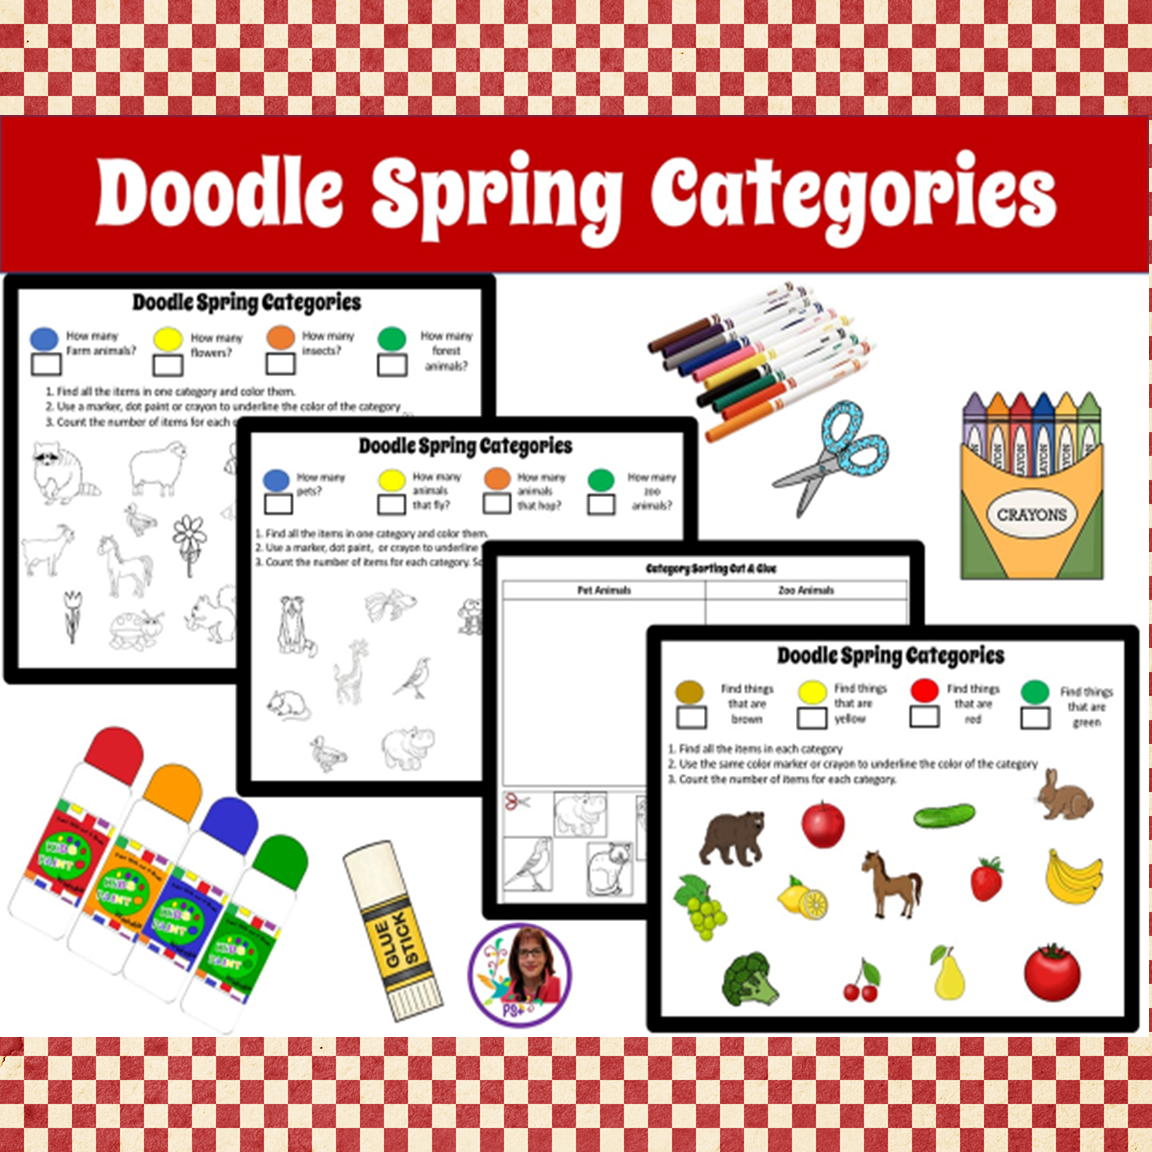 Doodle Spring Categories 